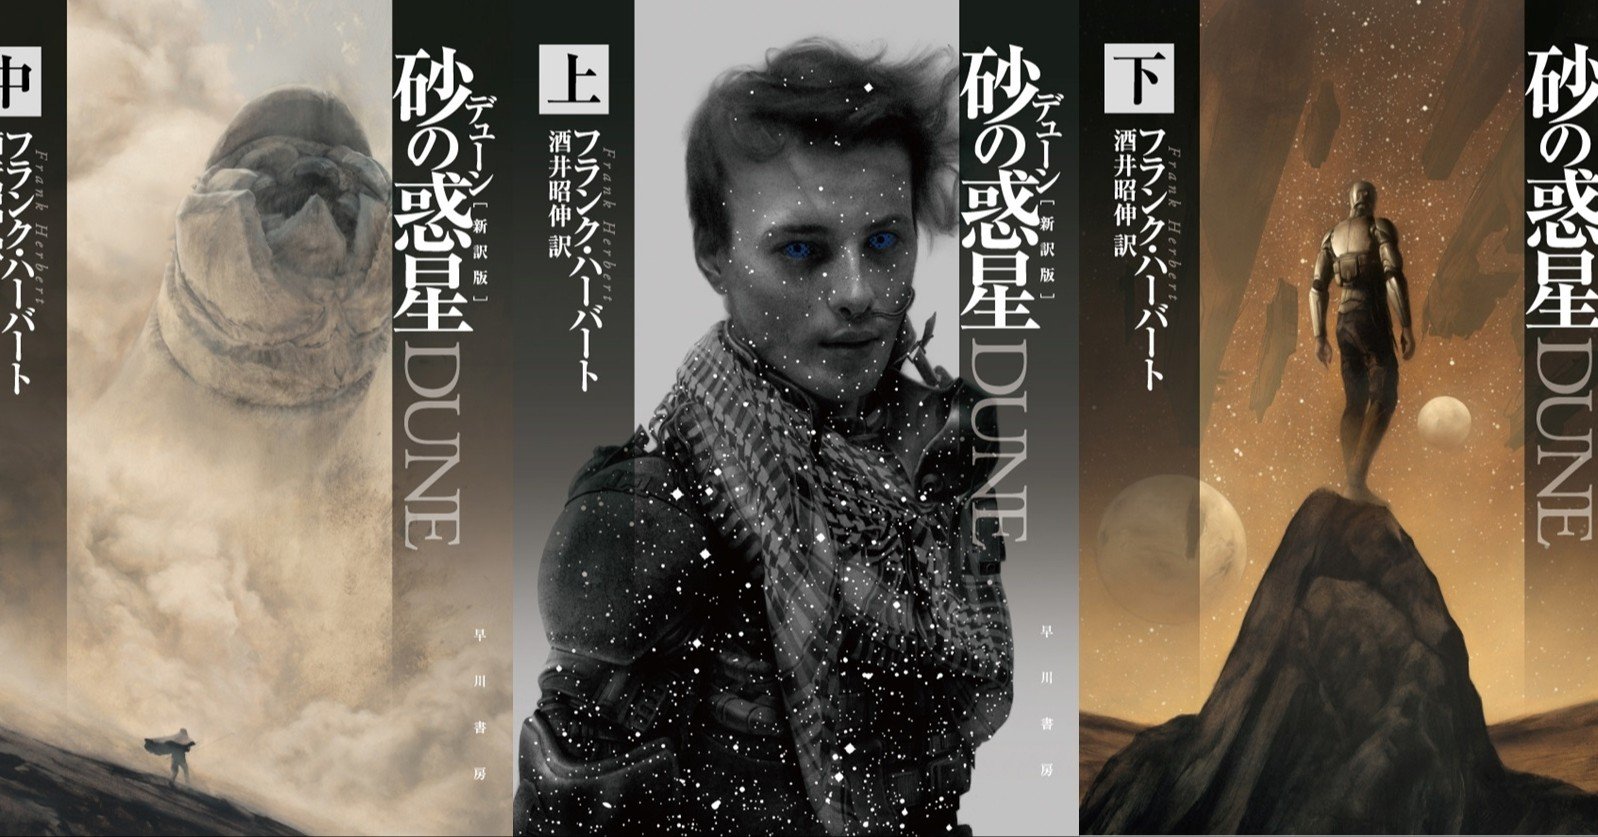 ドゥニ ヴィルヌーヴ監督最新作 Dune デューン 砂の惑星 映画予告篇 Hayakawa Books Magazines B